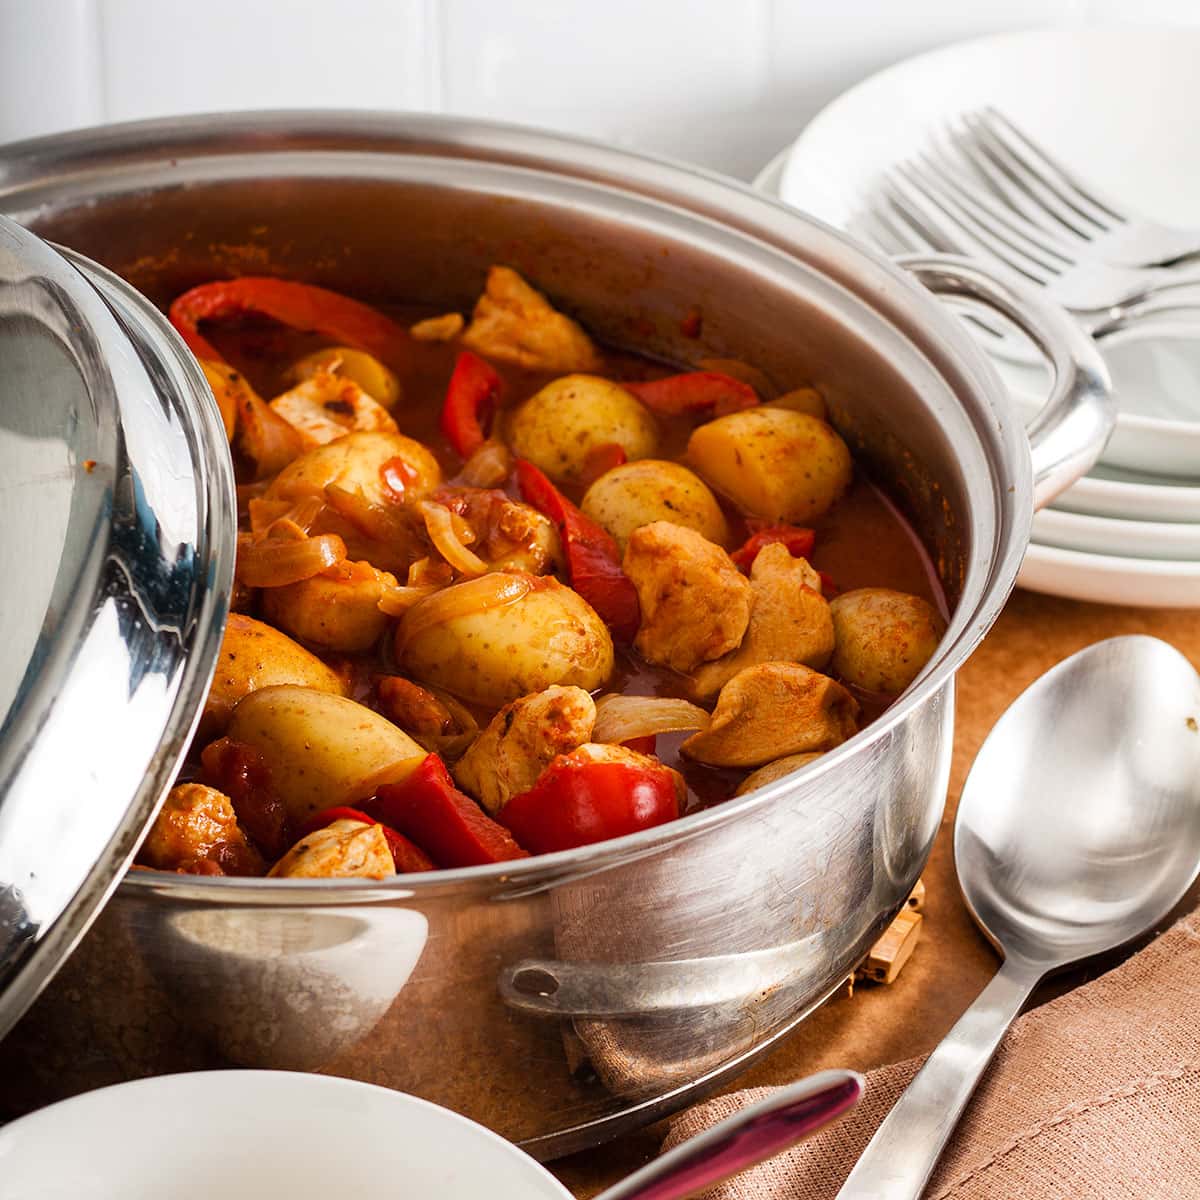 chicken and potato goulash in a casserole dish.